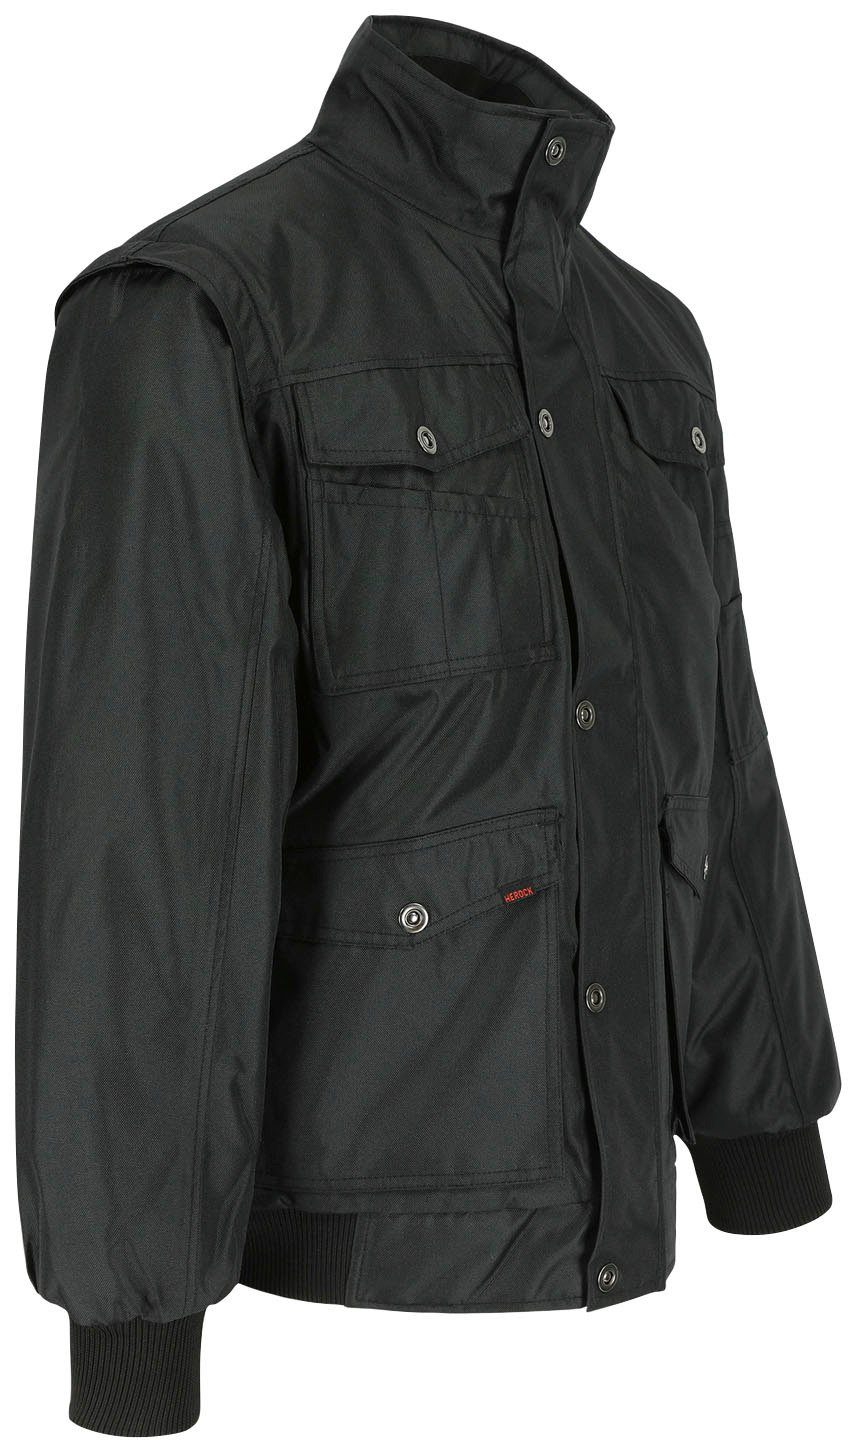 Herock Arbeitsjacke Balder Jacke Jacke wasserabweisende & vielen winddichte mit Atmungsaktive, Taschen